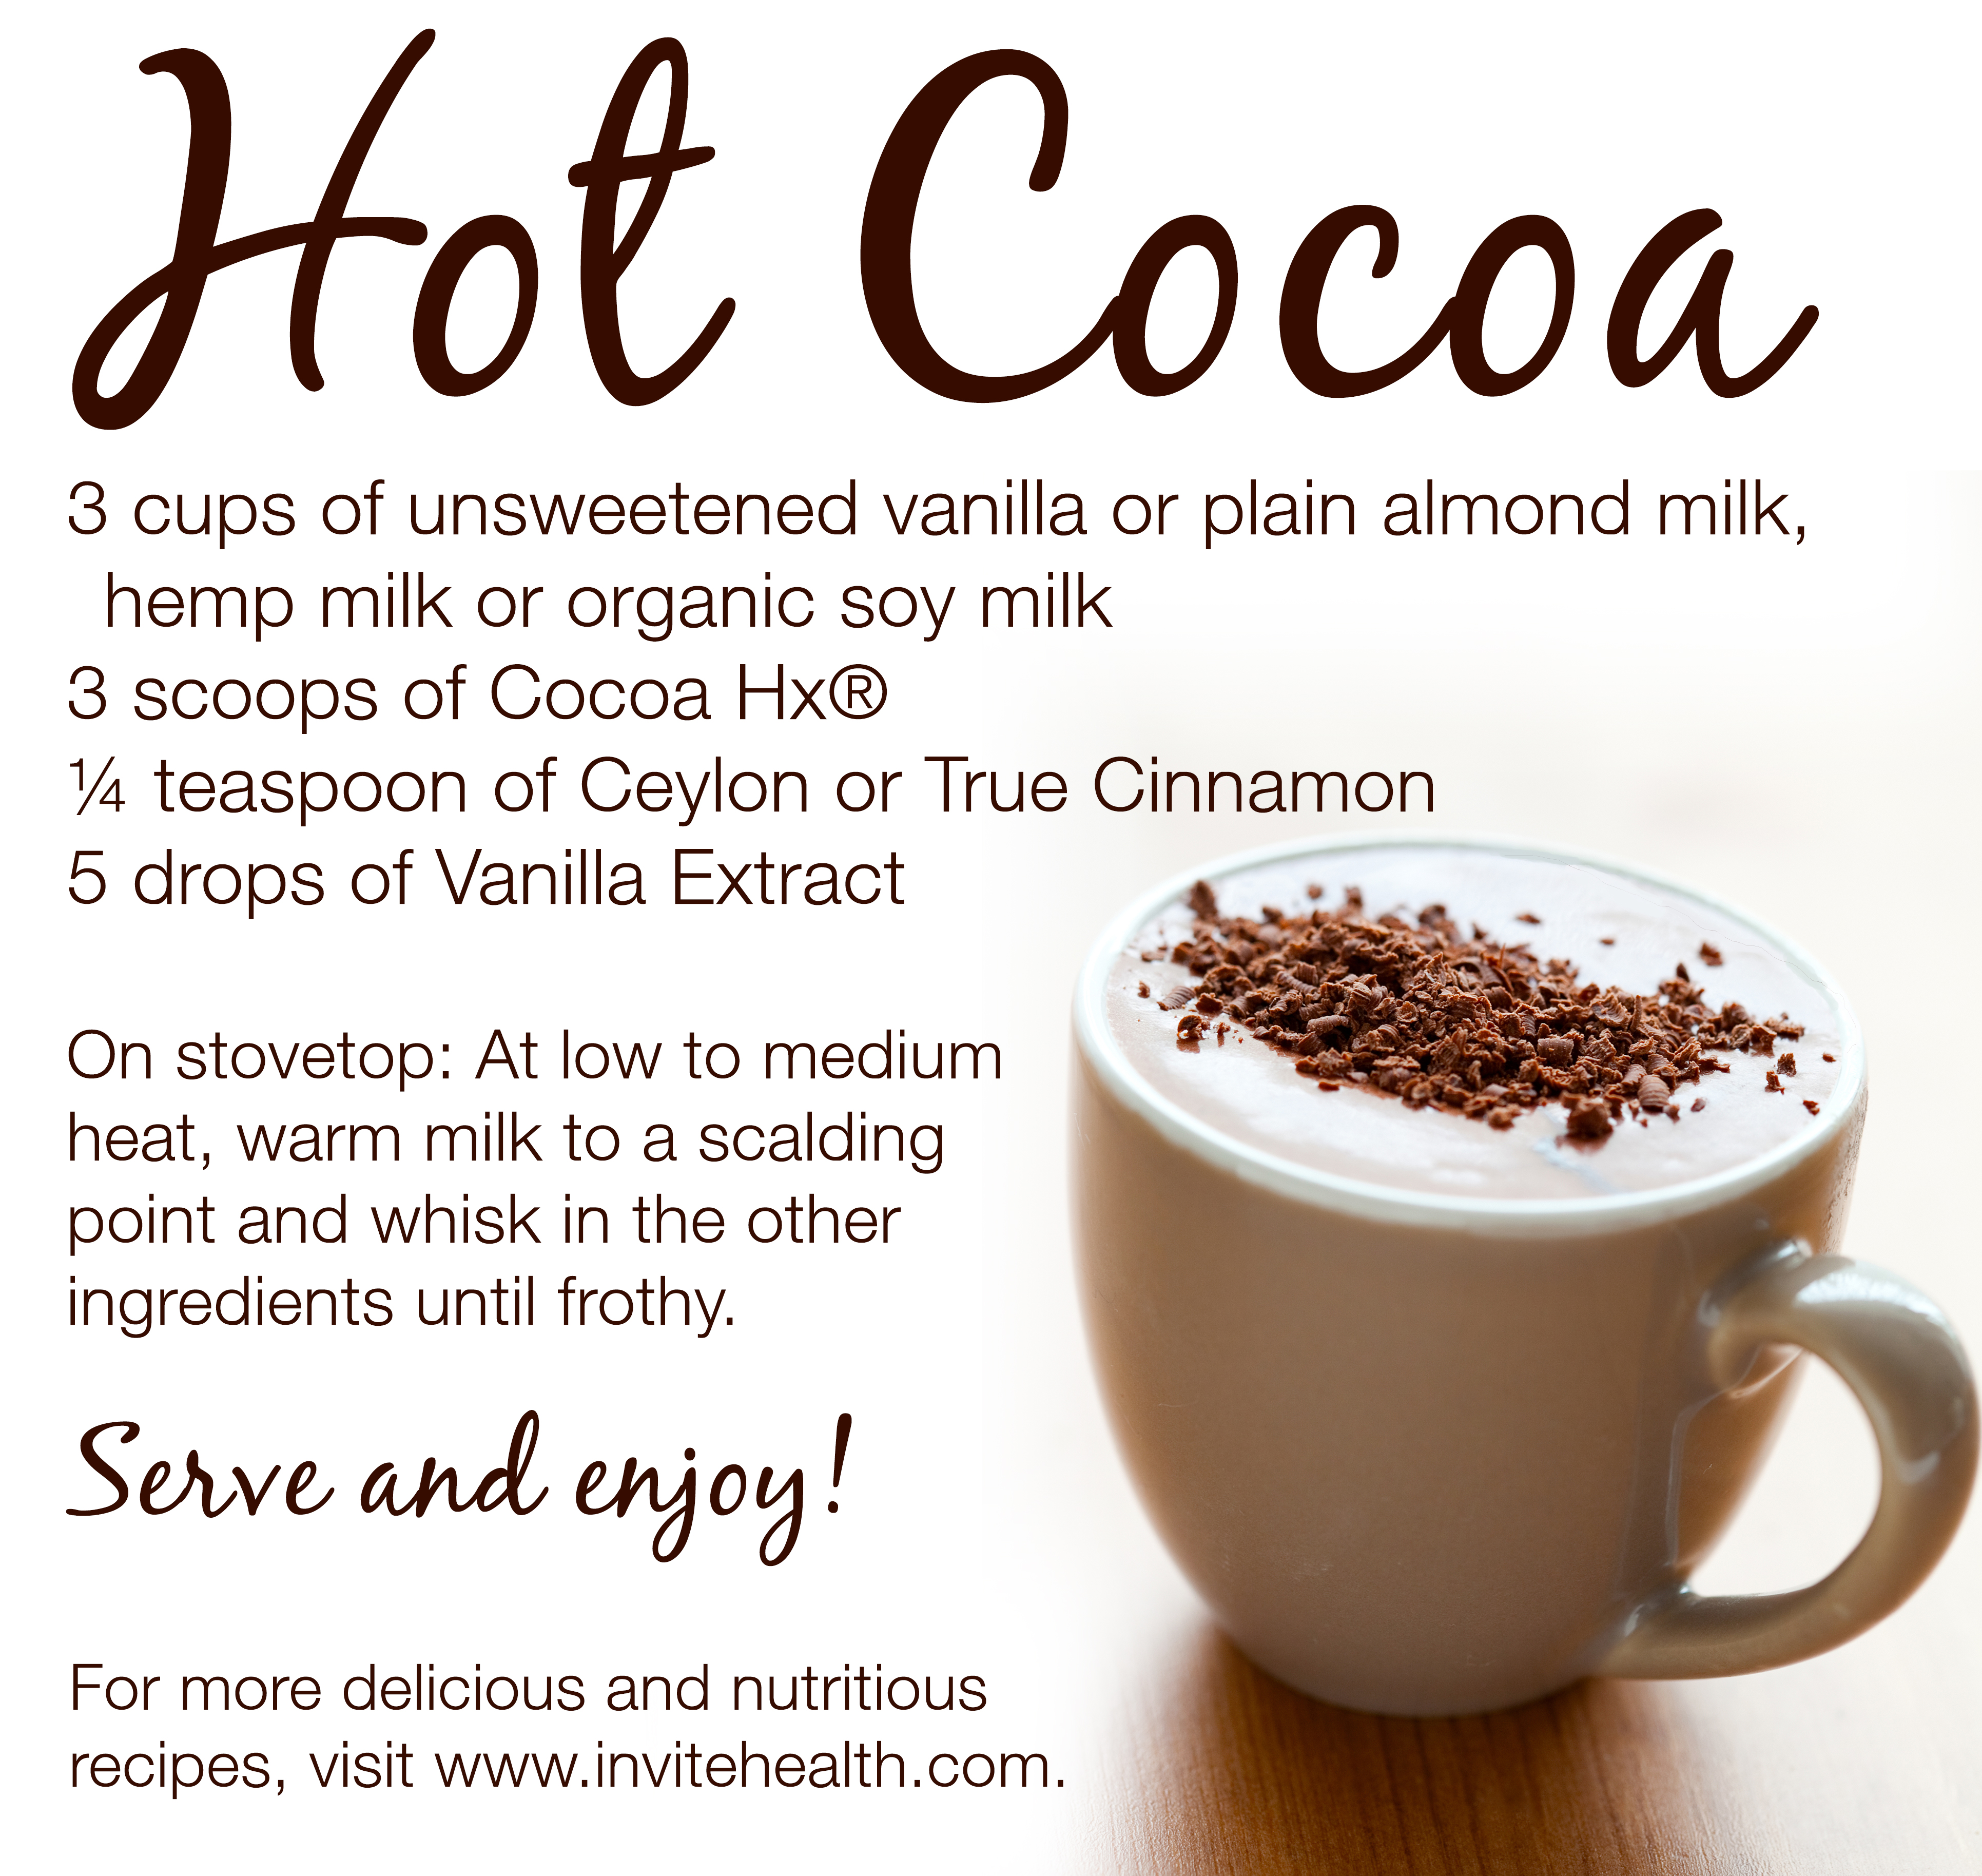 Hot Cocoa with Cocoa Hx Recipe!